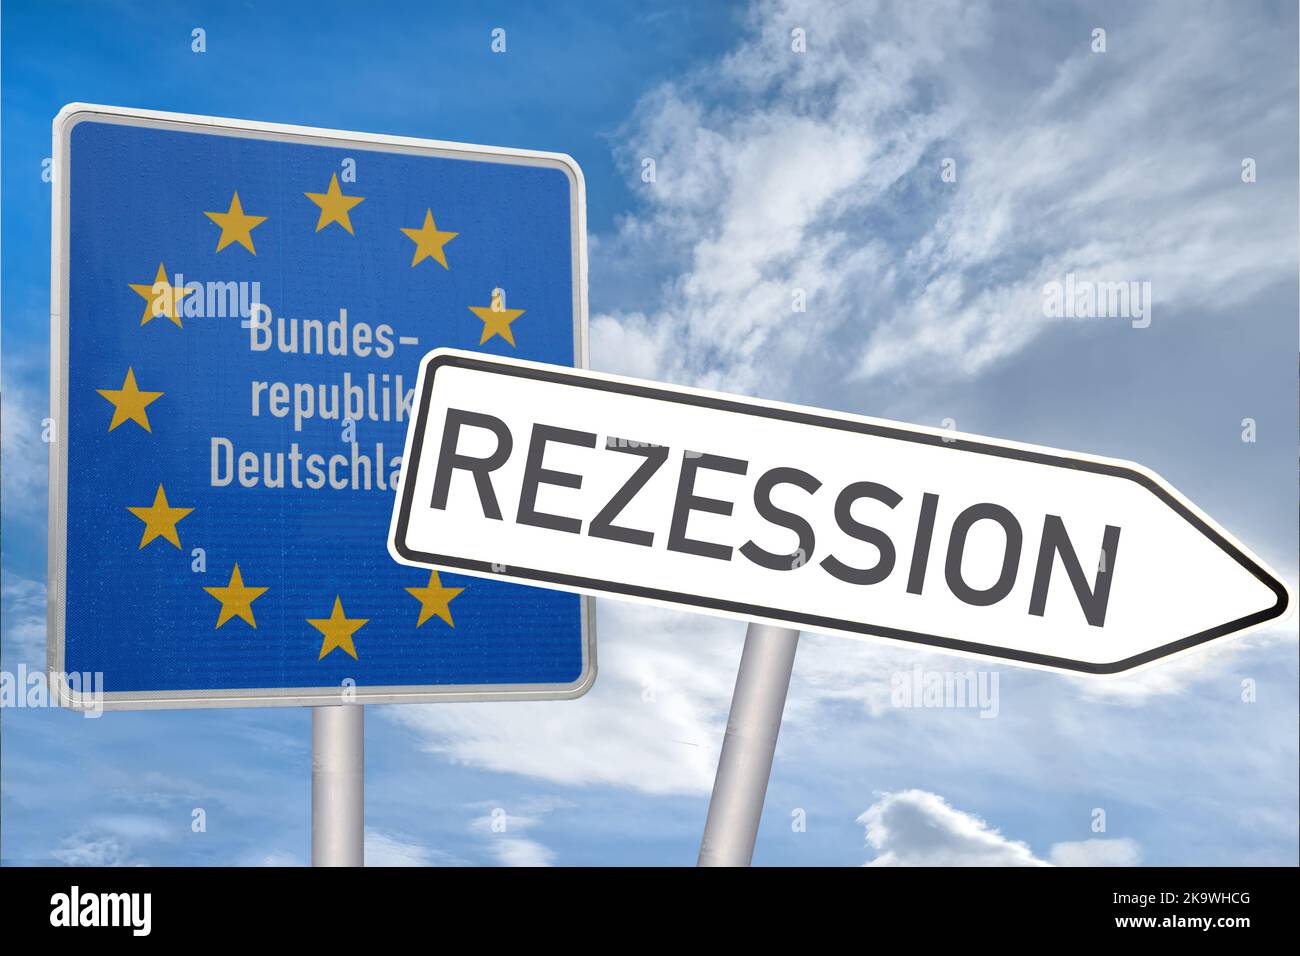 Symbolbild Rezession: Grenzschild der Bundesrepublik Deutschland, daneben zeigt ein Schild in Richtung Rezession (composizione) Foto Stock